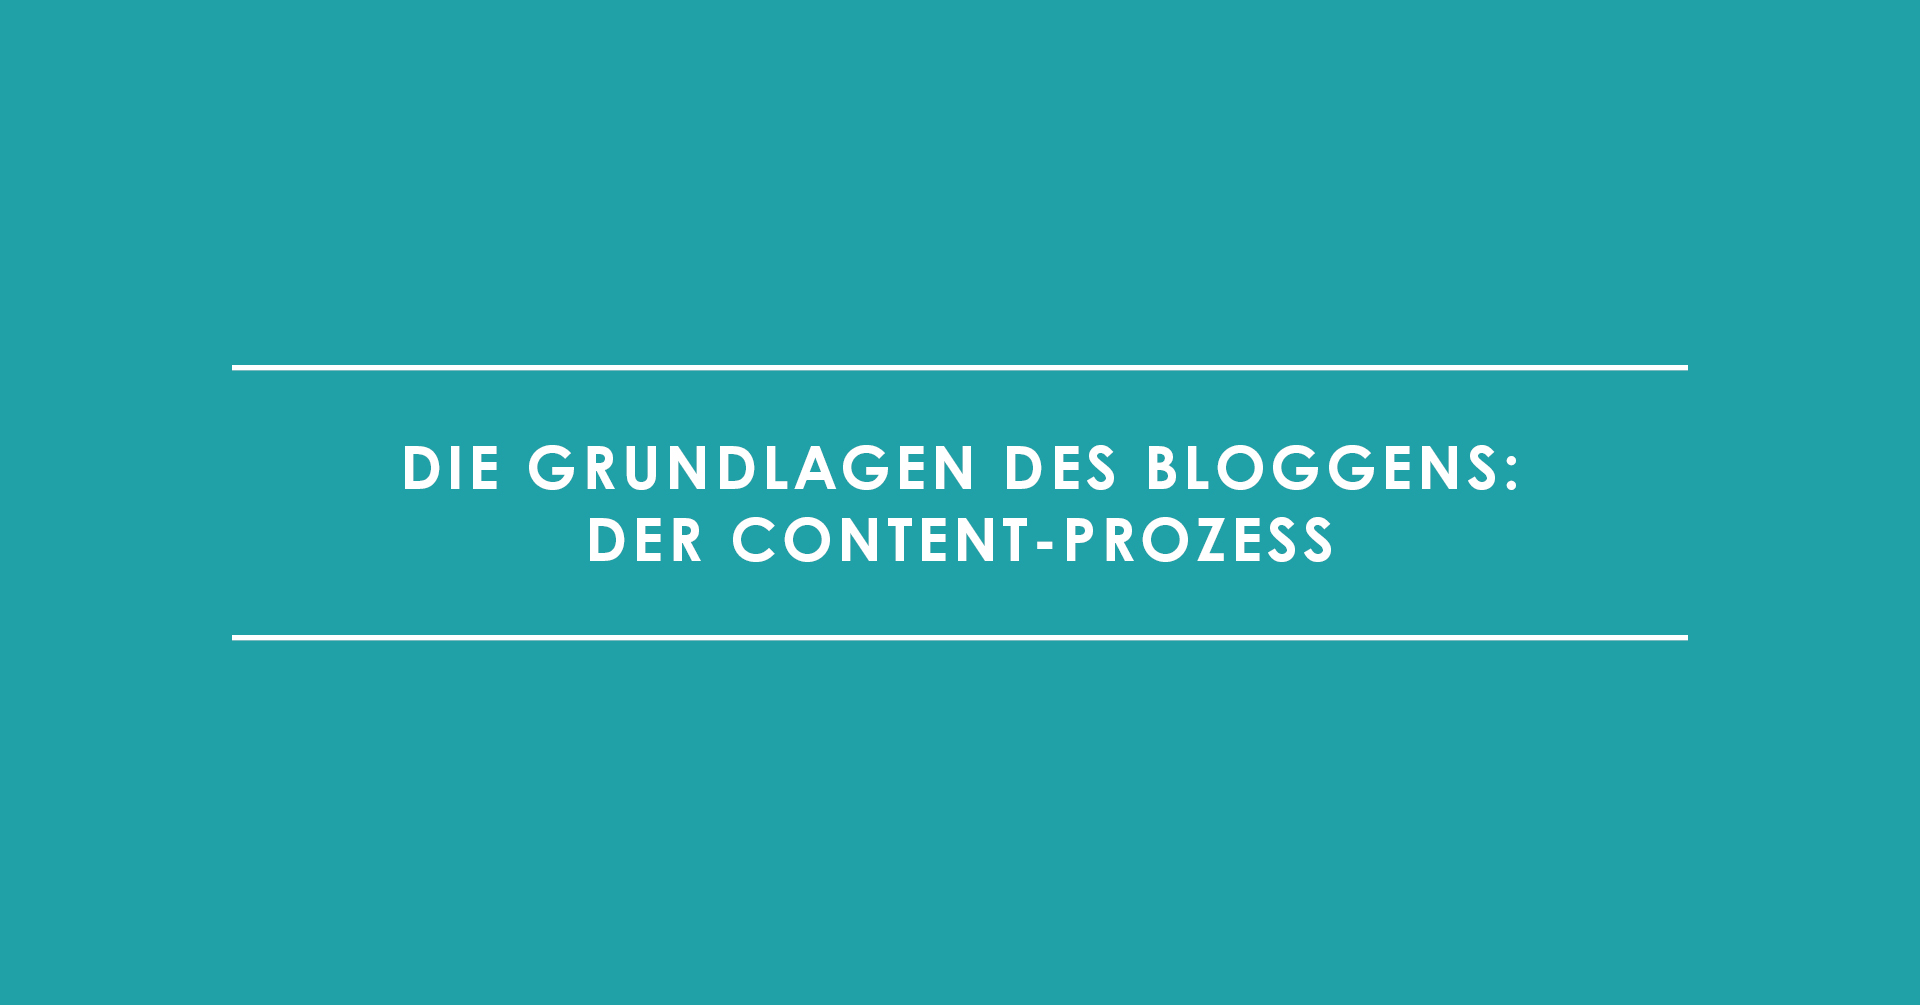 Die Grundlagen des Bloggens: Der Content-Prozess